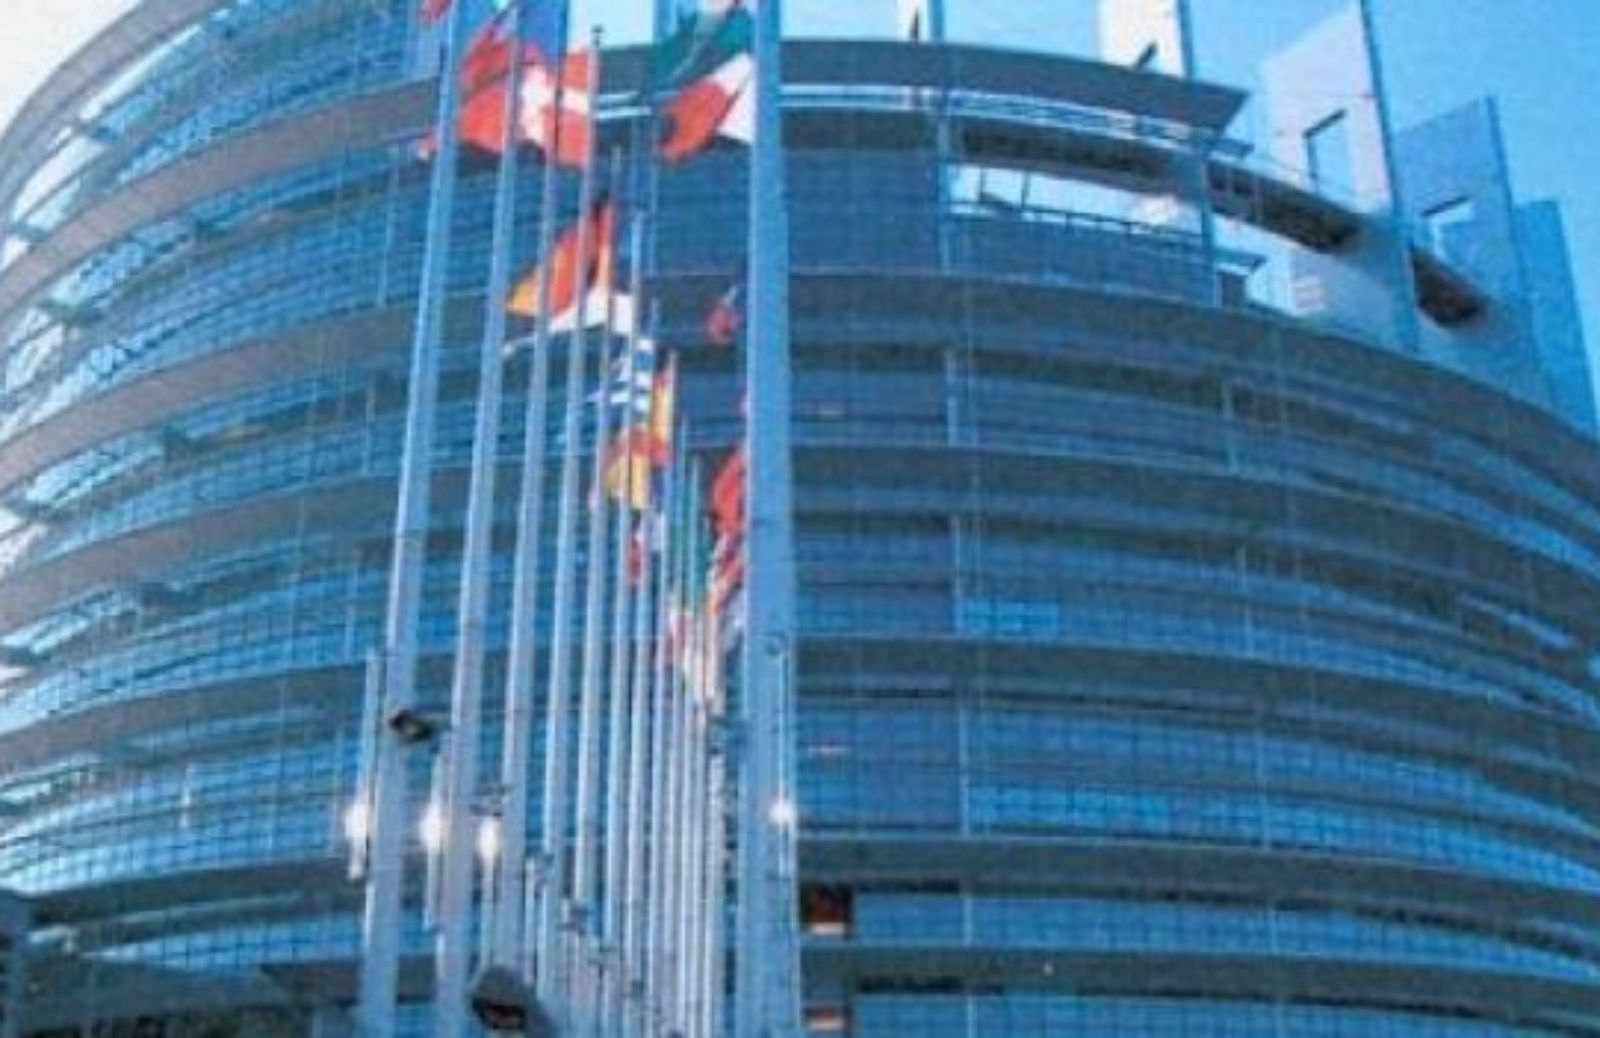 Come fare una visita al Parlamento Europeo